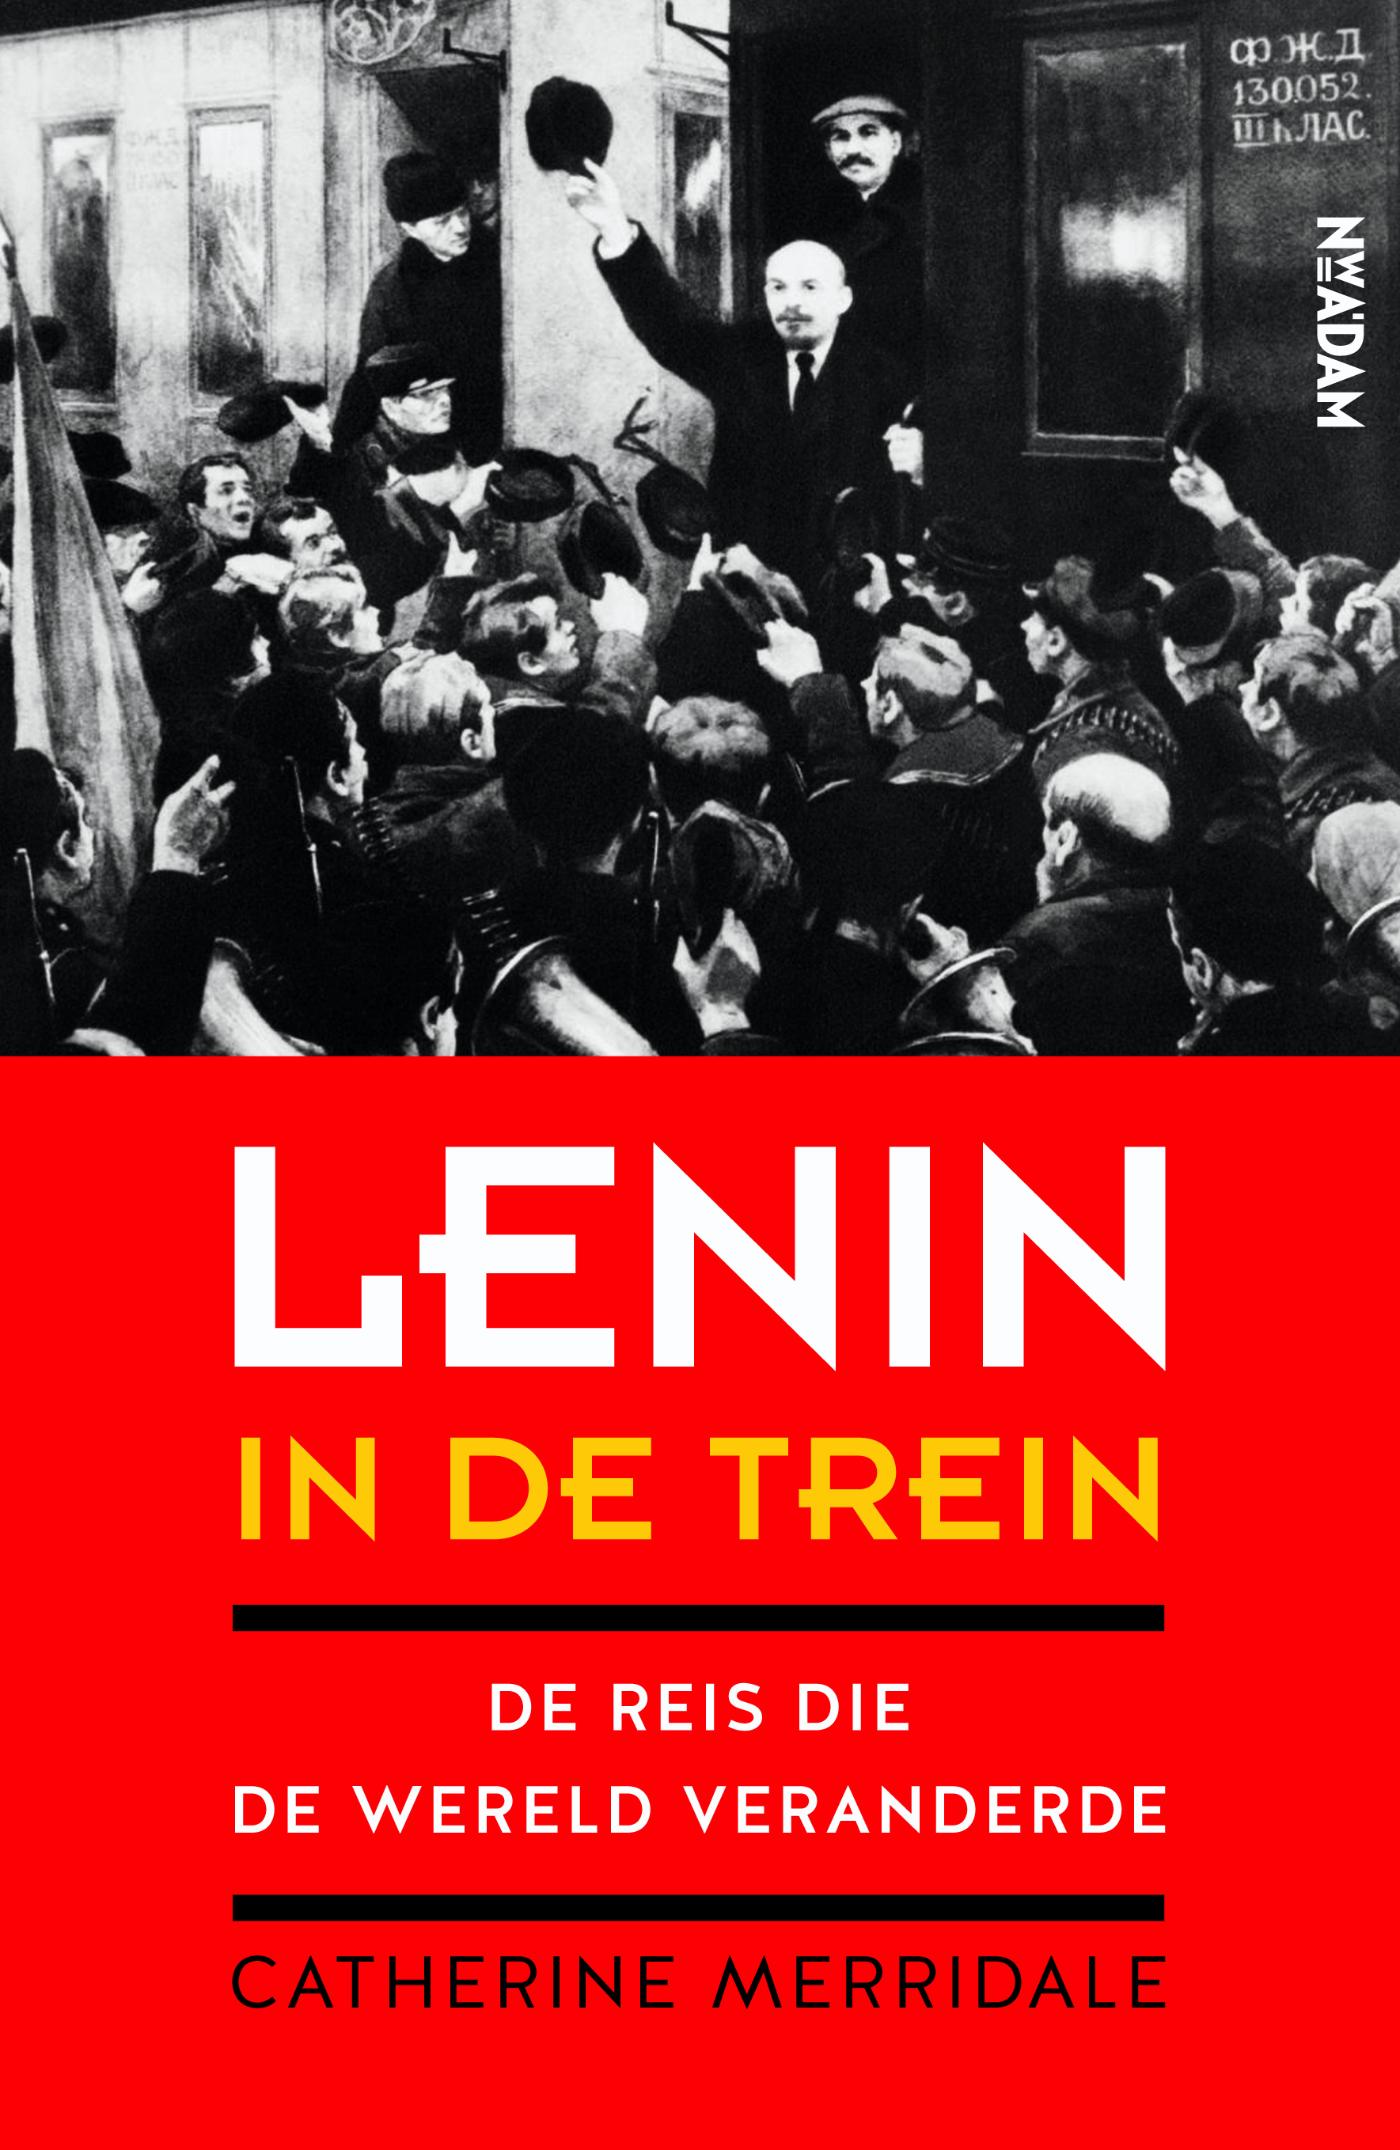 Lenin in de trein (Ebook)